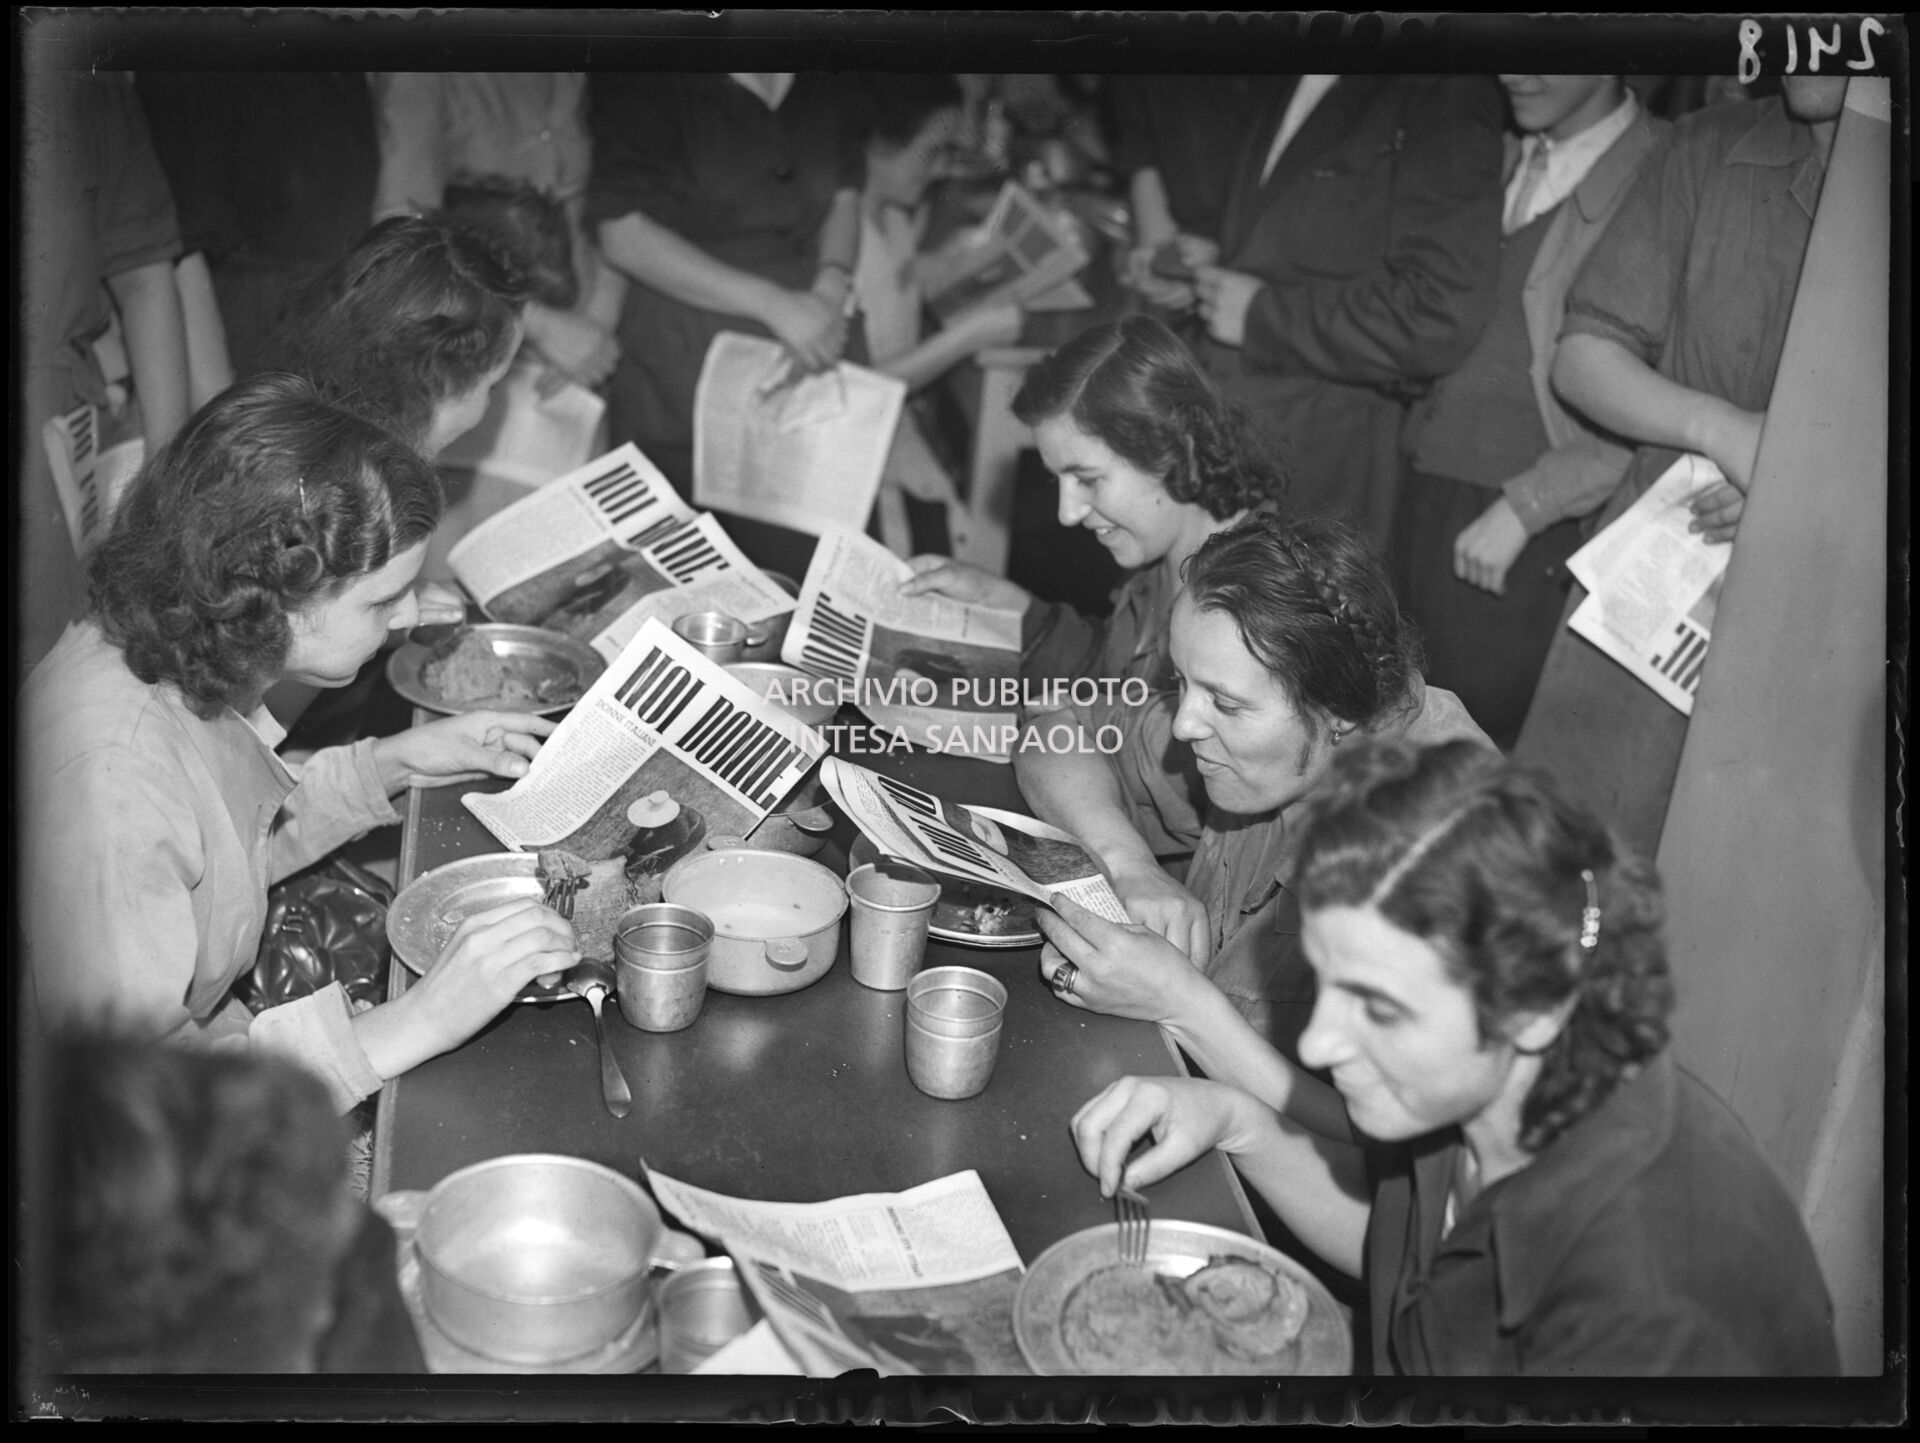 Un gruppo di donne, forse lavoratrici della fabbrica Pirelli, leggono una copia del giornale "Noi donne" in pausa pranzo